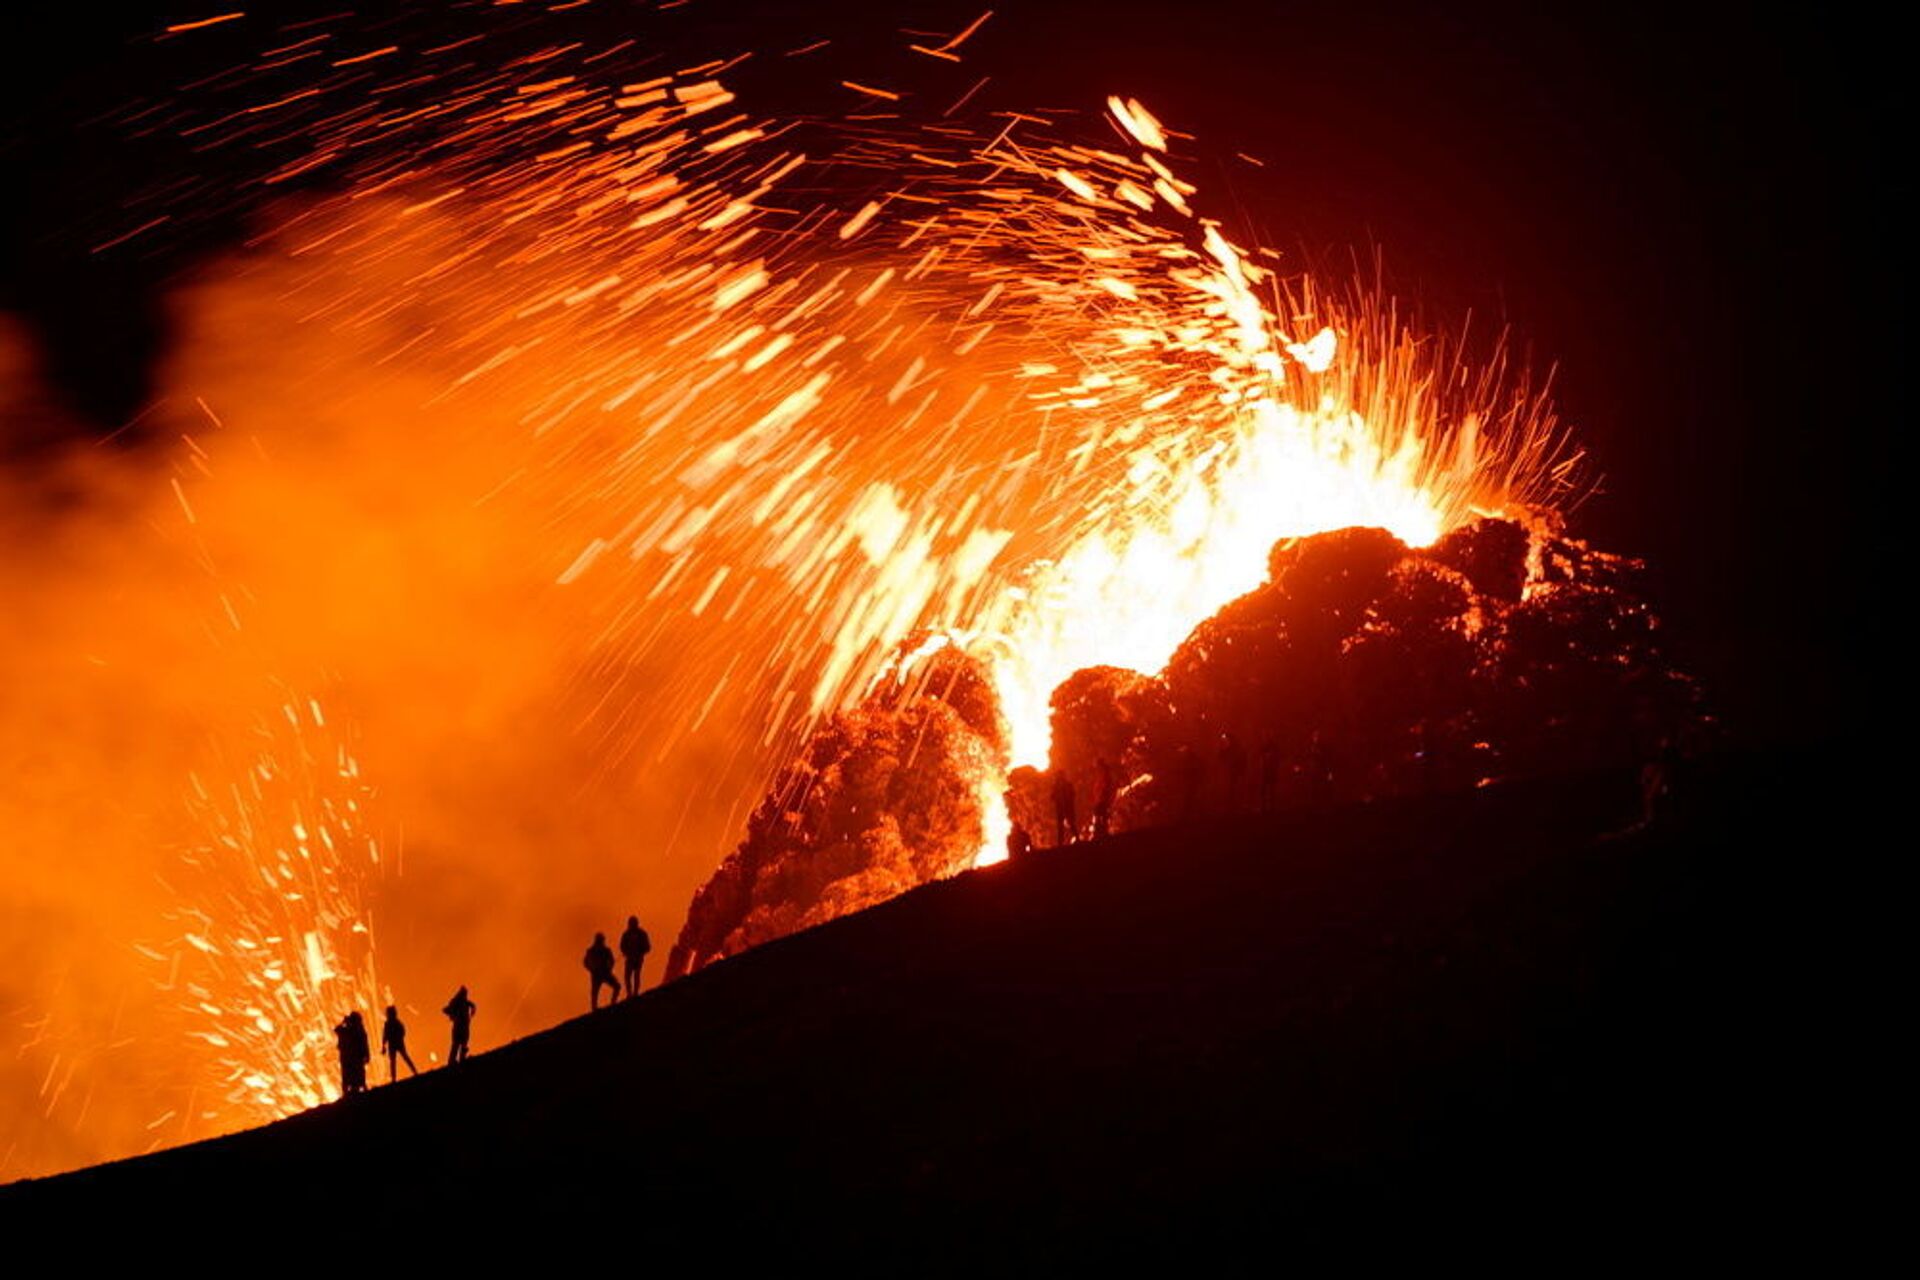 Turismo quente: vulcão ativo e com erupções 'acessíveis' está à venda na Islândia - Sputnik Brasil, 1920, 12.05.2021